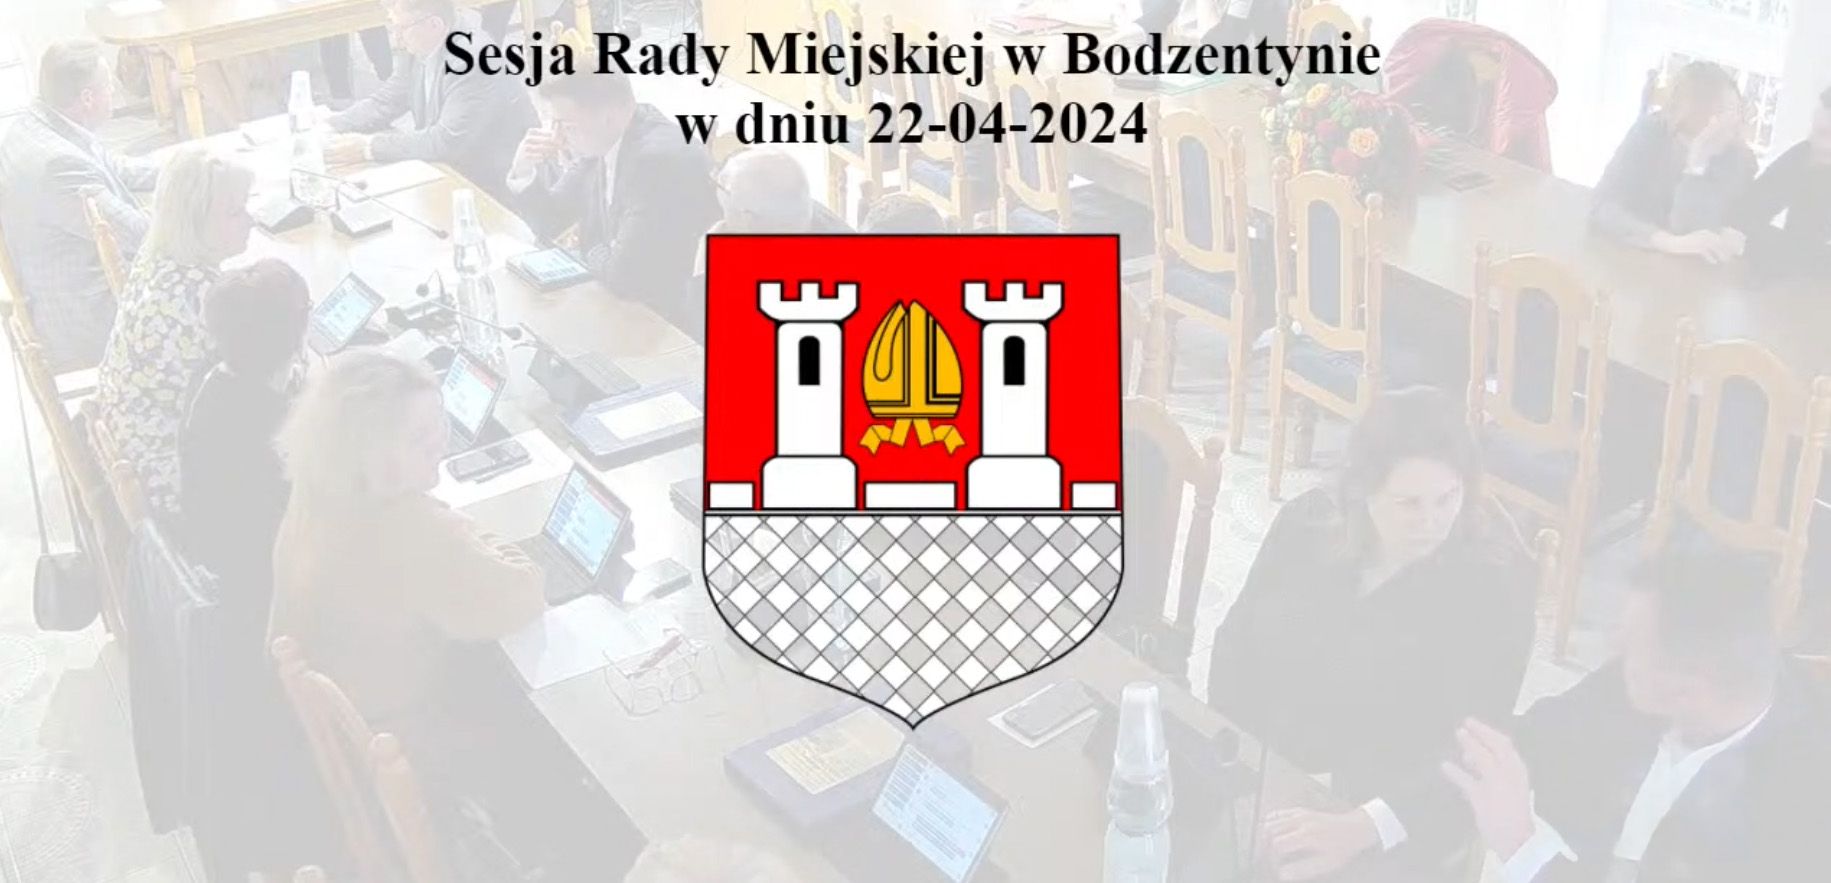 Ostatnia sesja Rady Miejskiej w Bodzentynie kadencji 2019-2024